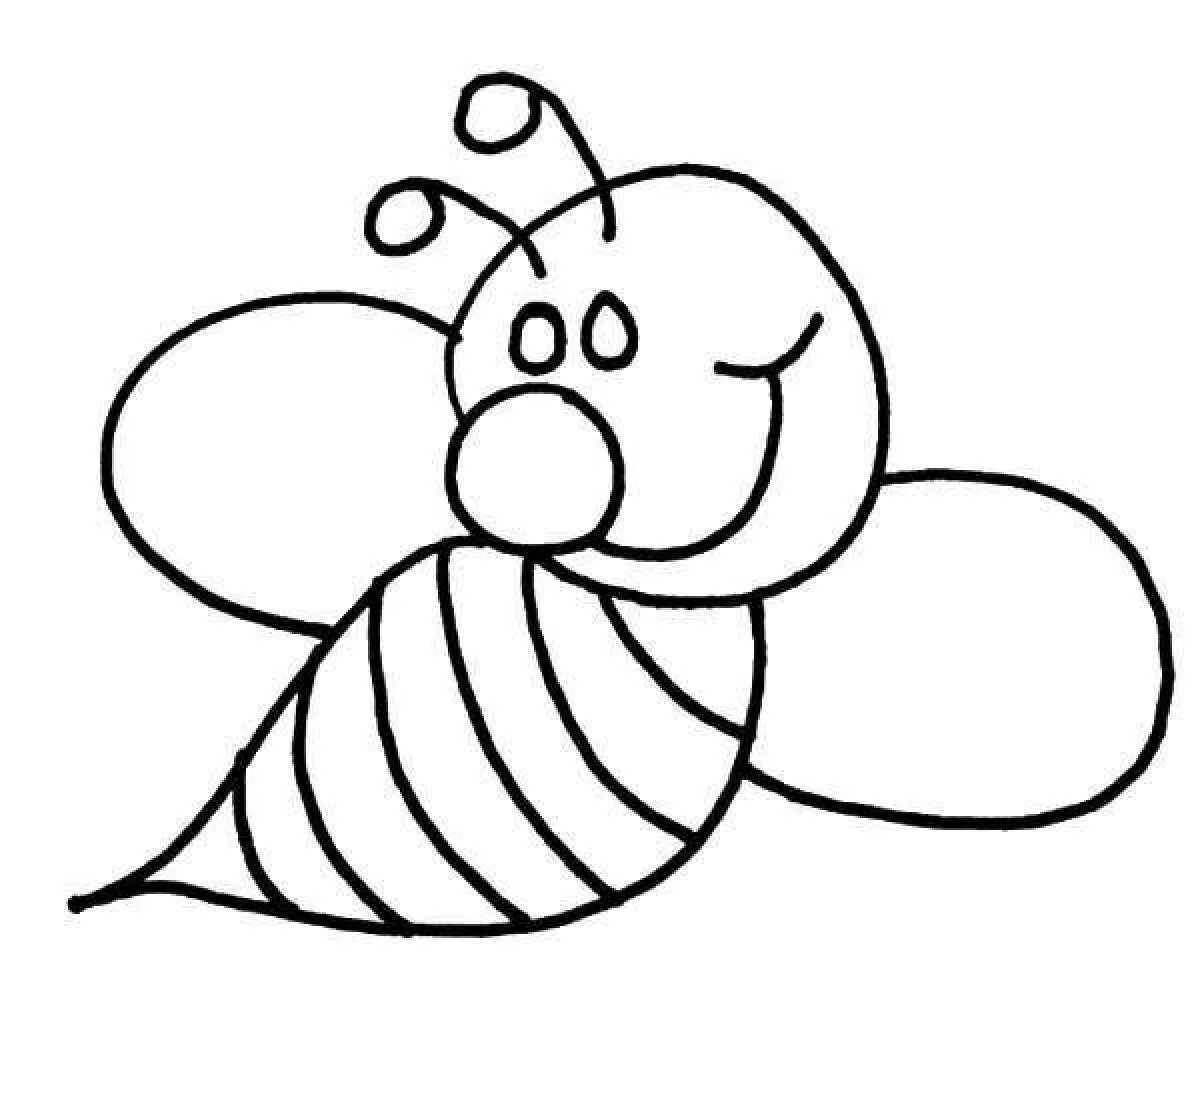 Насекомые раскраска для детей 3 4 лет. Пчела раскраска для детей. Раскраска пчёлка для детей. Раскраска насекомые для малышей. Насекомые раскраска для детей.